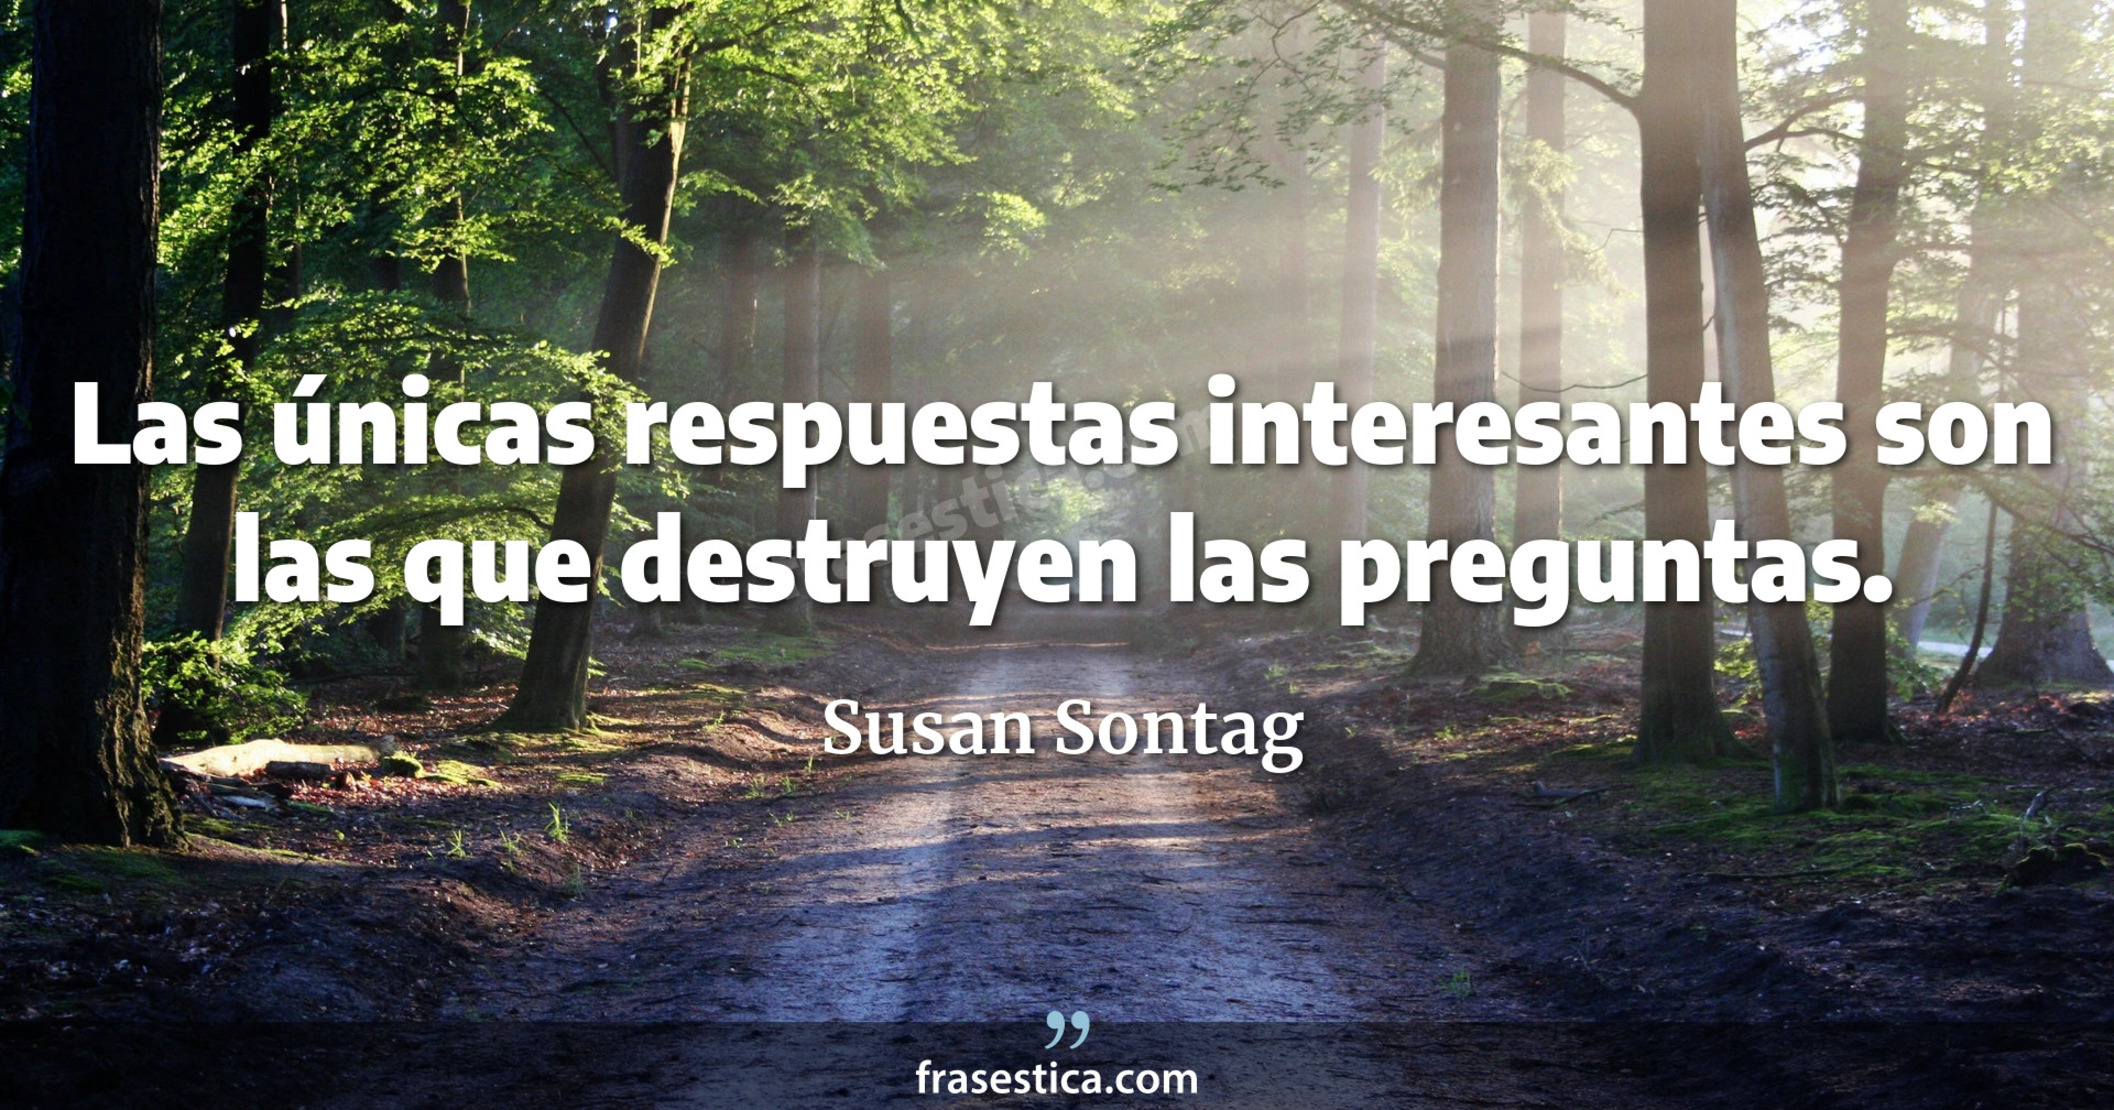 Las únicas respuestas interesantes son las que destruyen las preguntas. - Susan Sontag